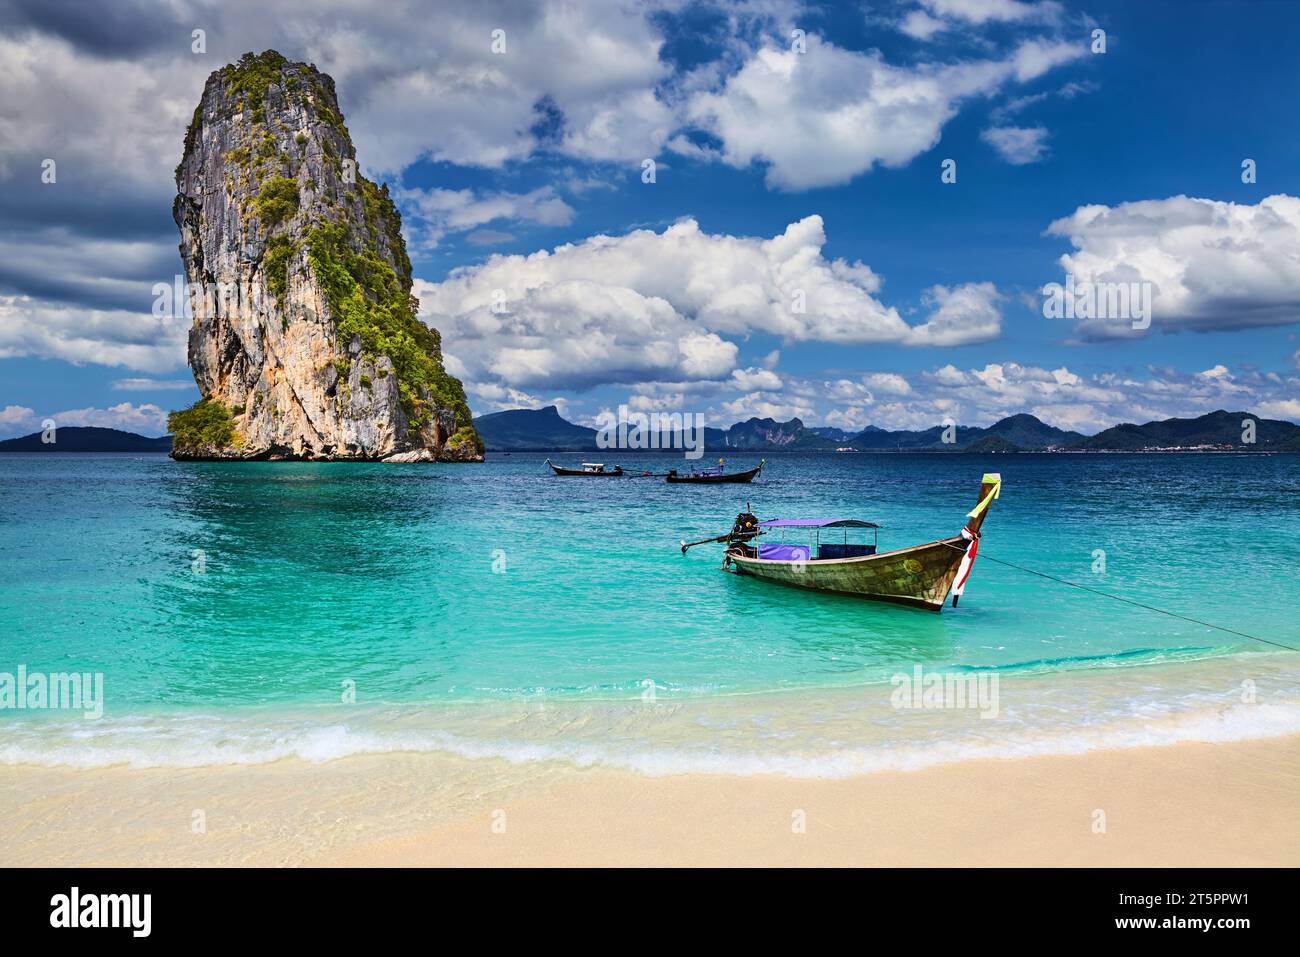 Bateaux à longue queue, plage tropicale, île de Poda, mer d'Andaman, Thaïlande Banque D'Images